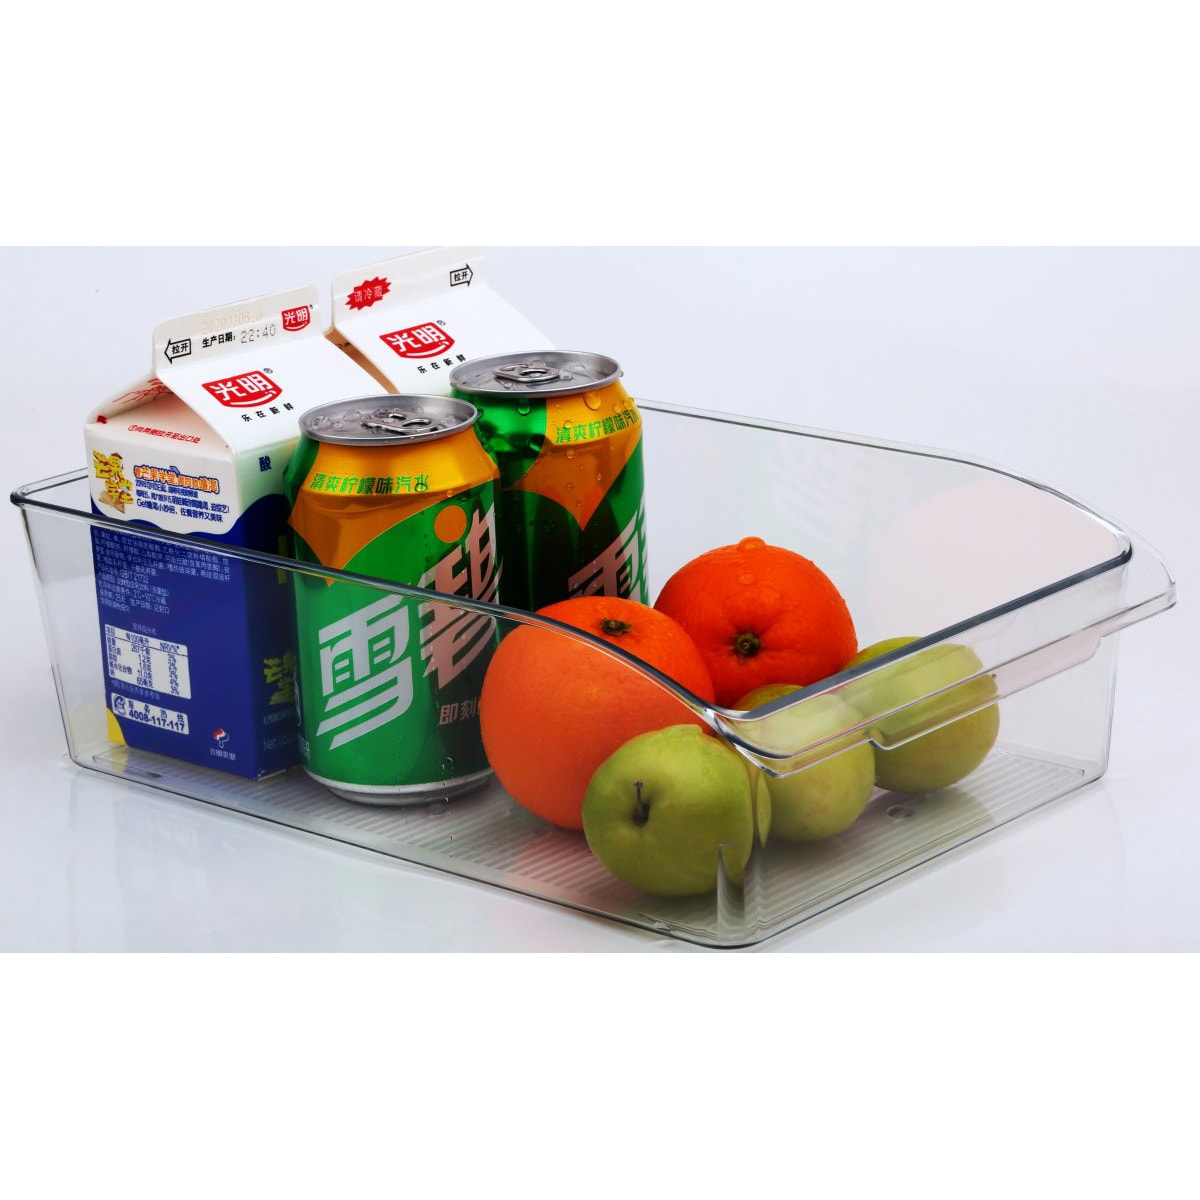 ROSELIFE 飲品蔬果分類廚房冰箱收納盒 12.2"x8.0"x3.6"